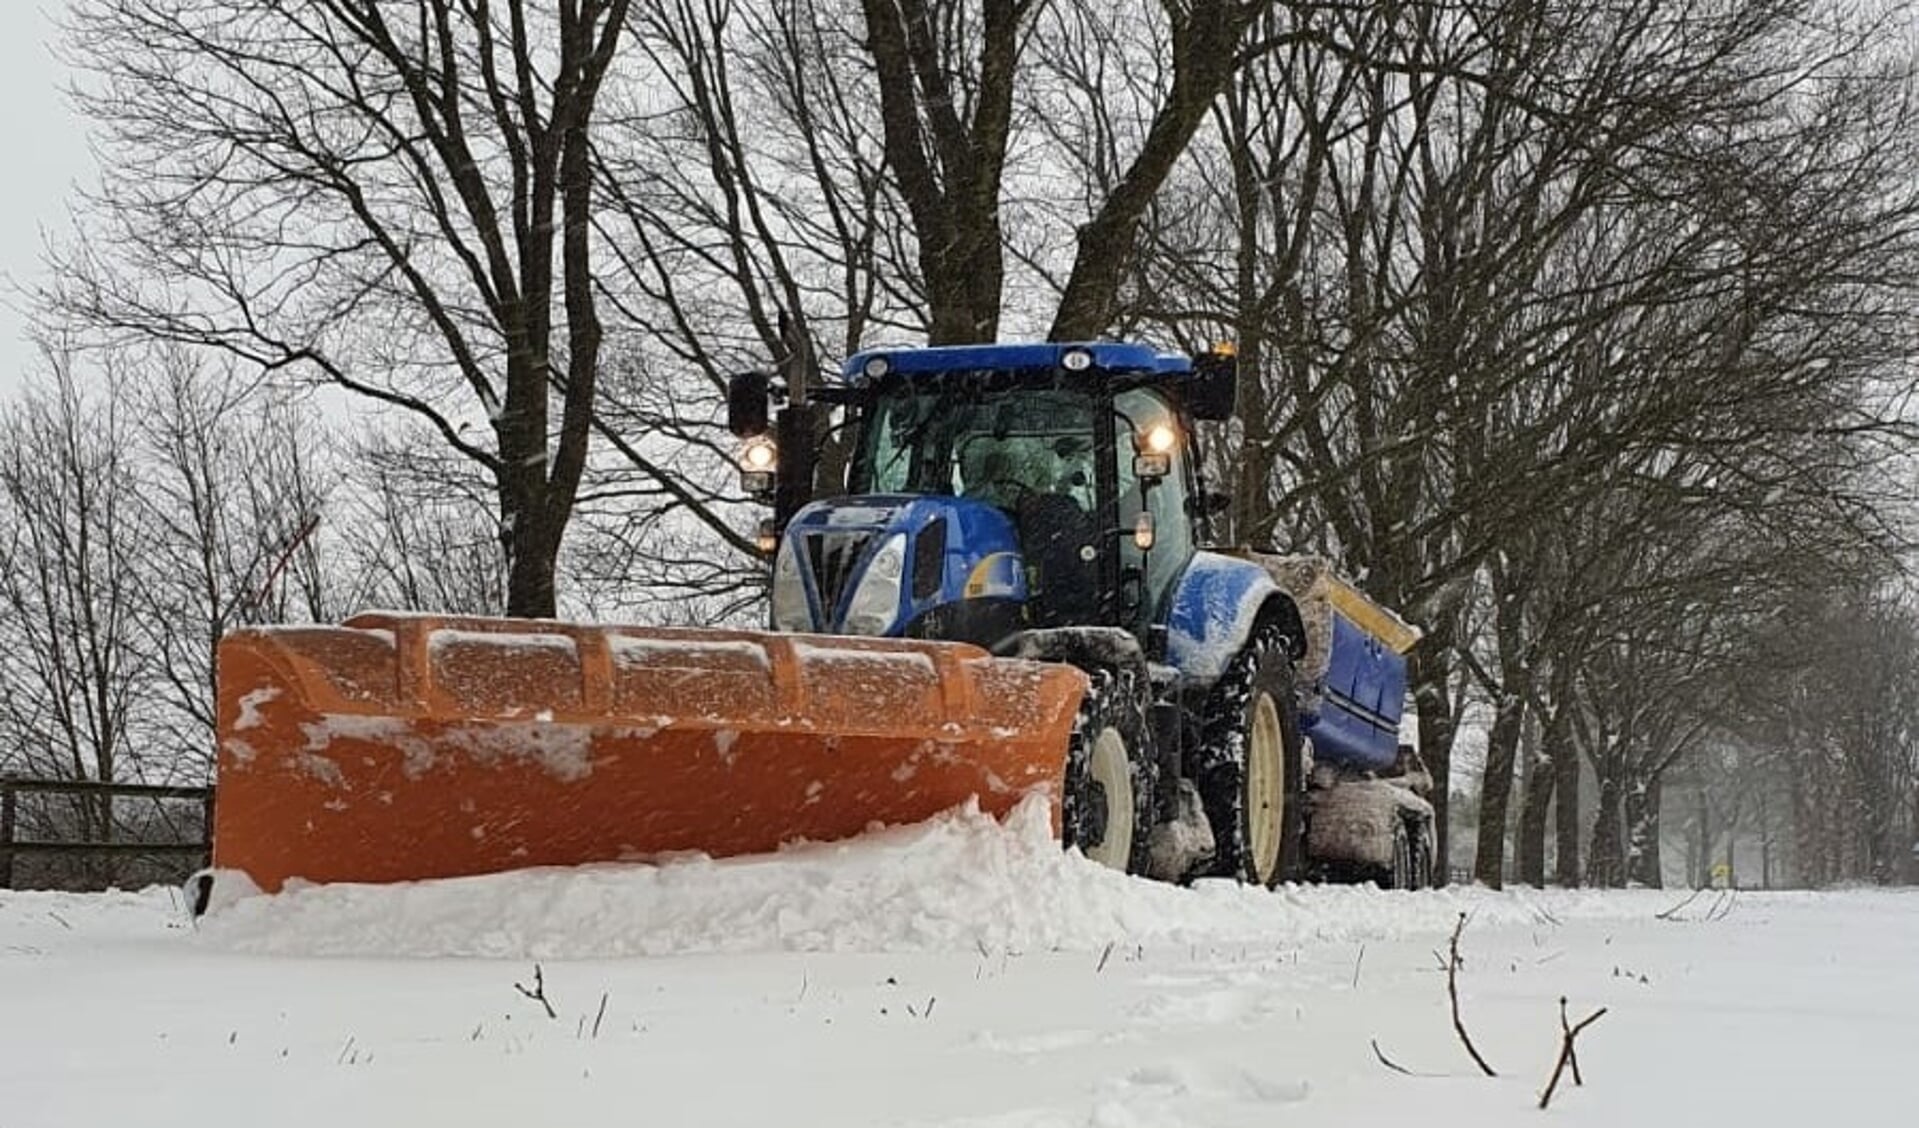 Met veel inspanning wordt er gewerkt om doorgaande wegen sneeuw- en ijsvrij te maken